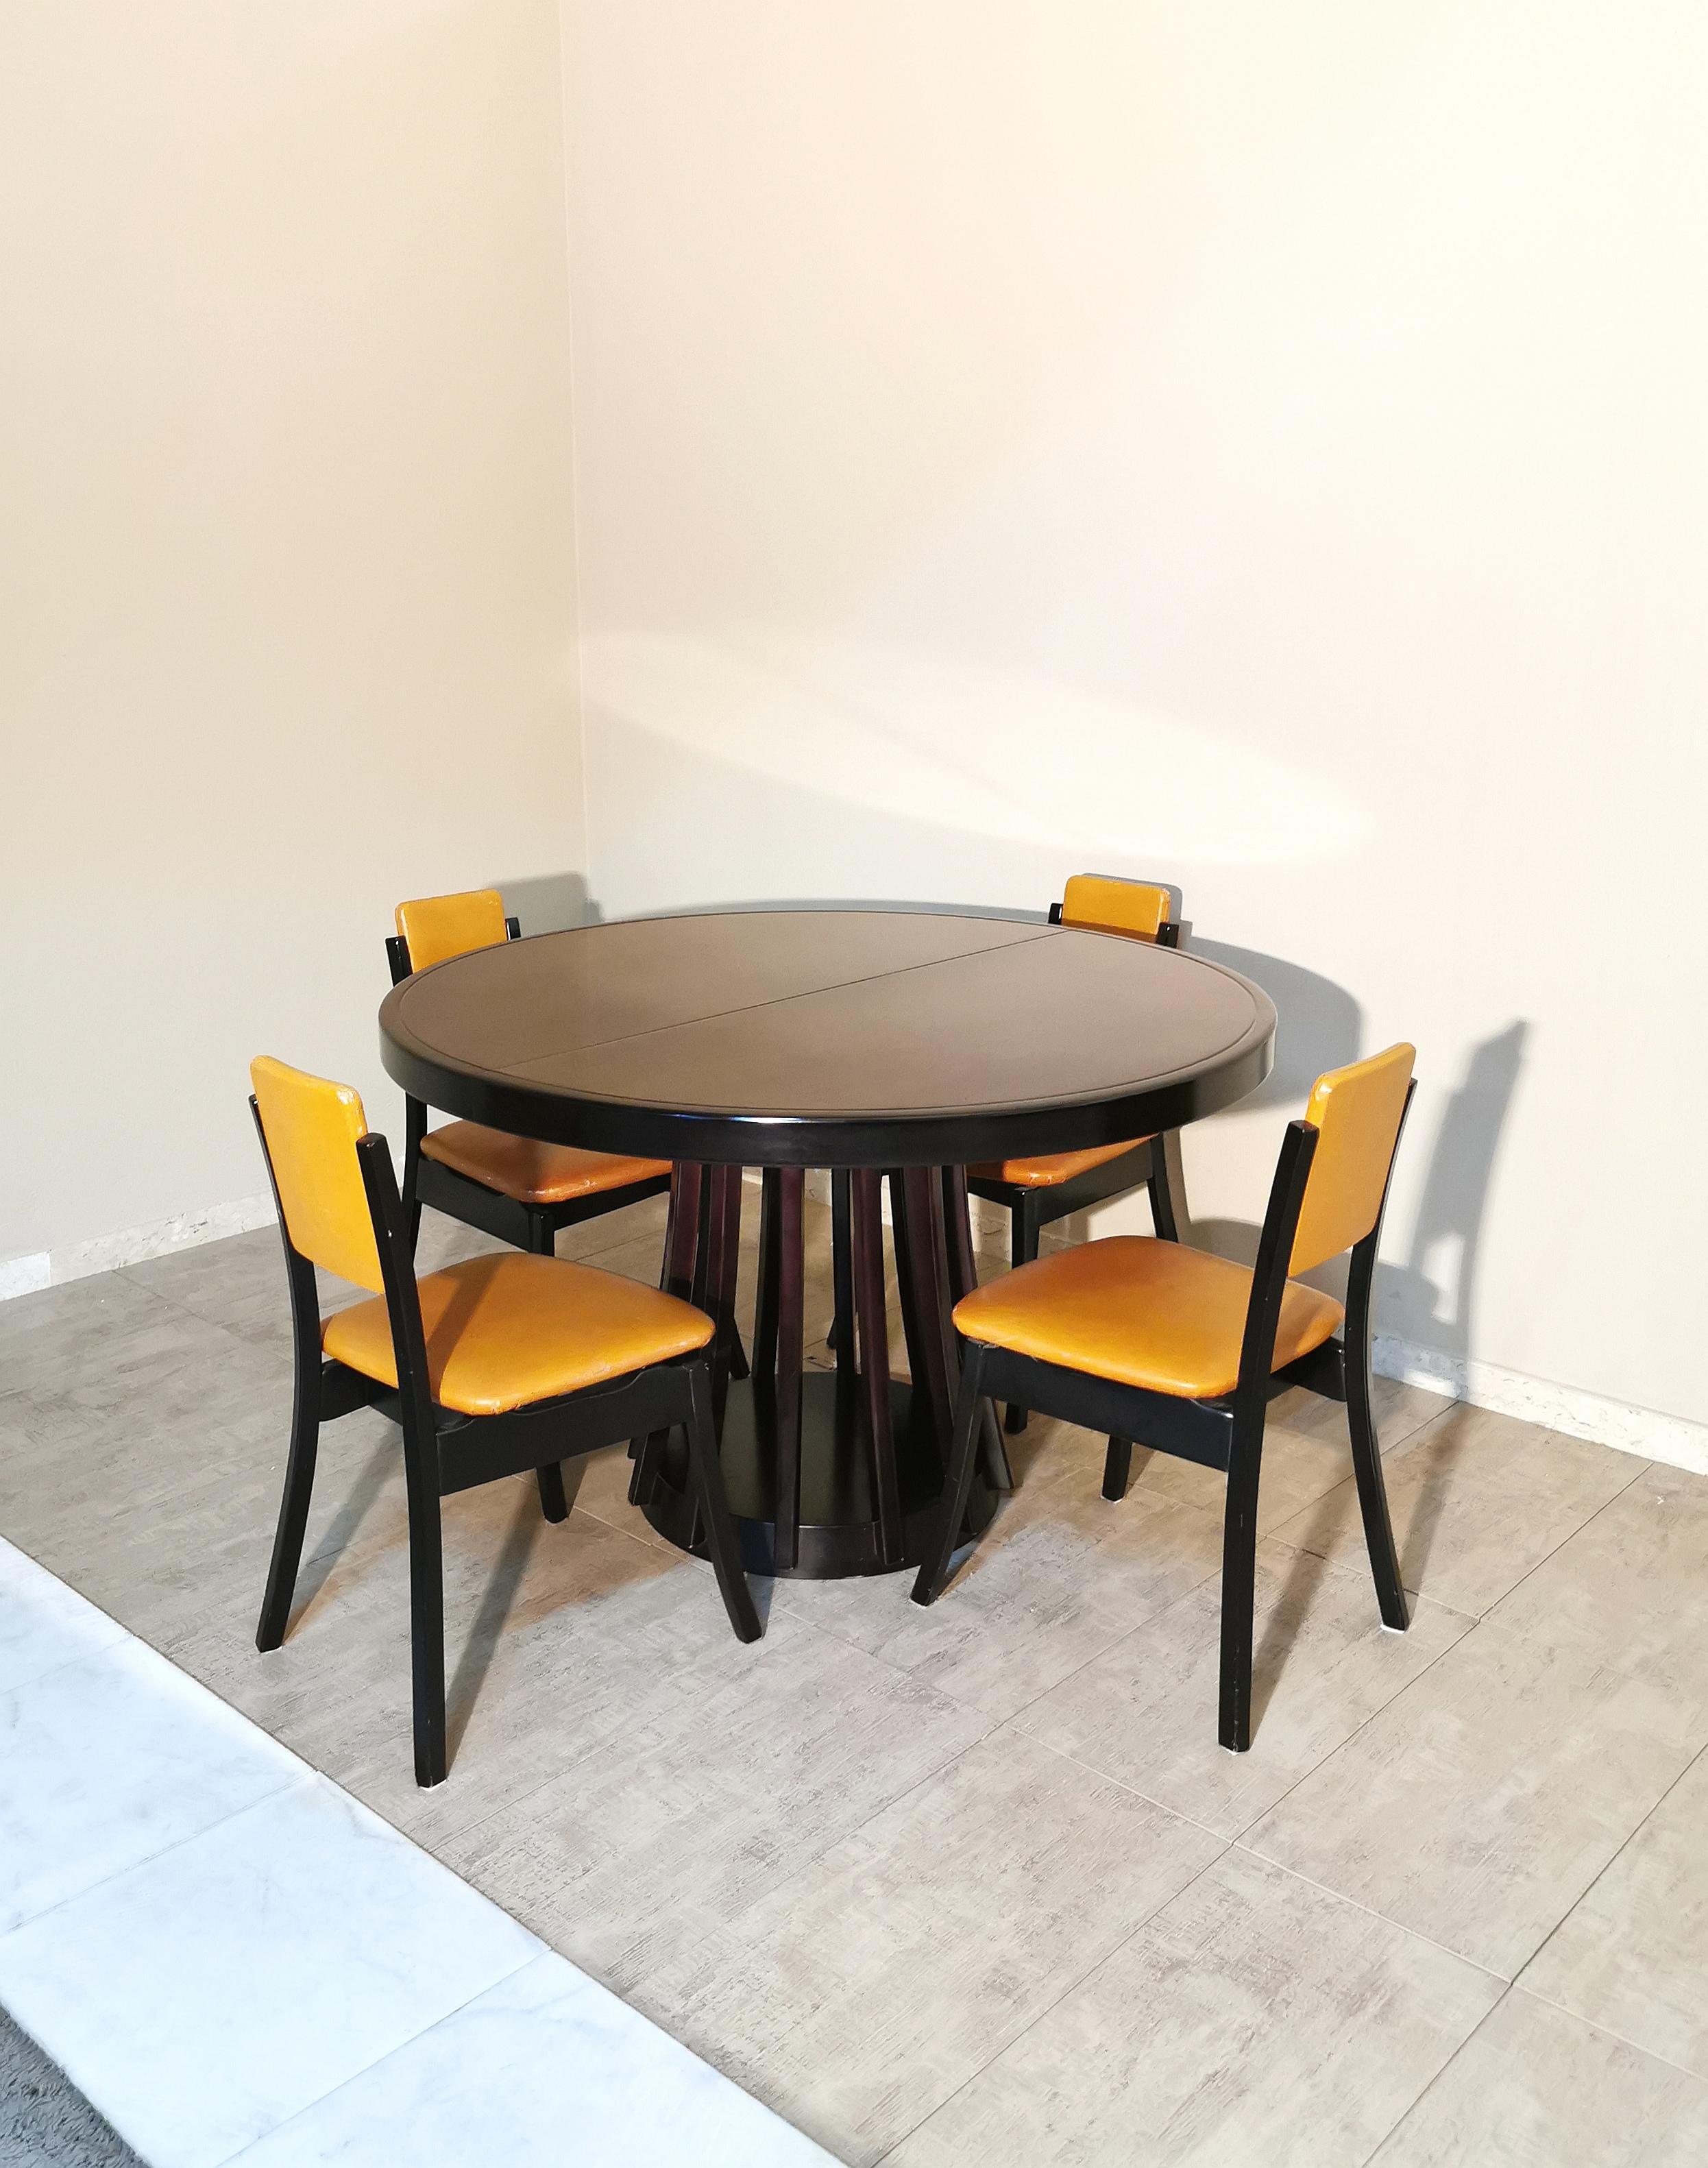  Dining Room Table Wood Angelo Mangiarotti Mid Century Italian Design 1972s 10